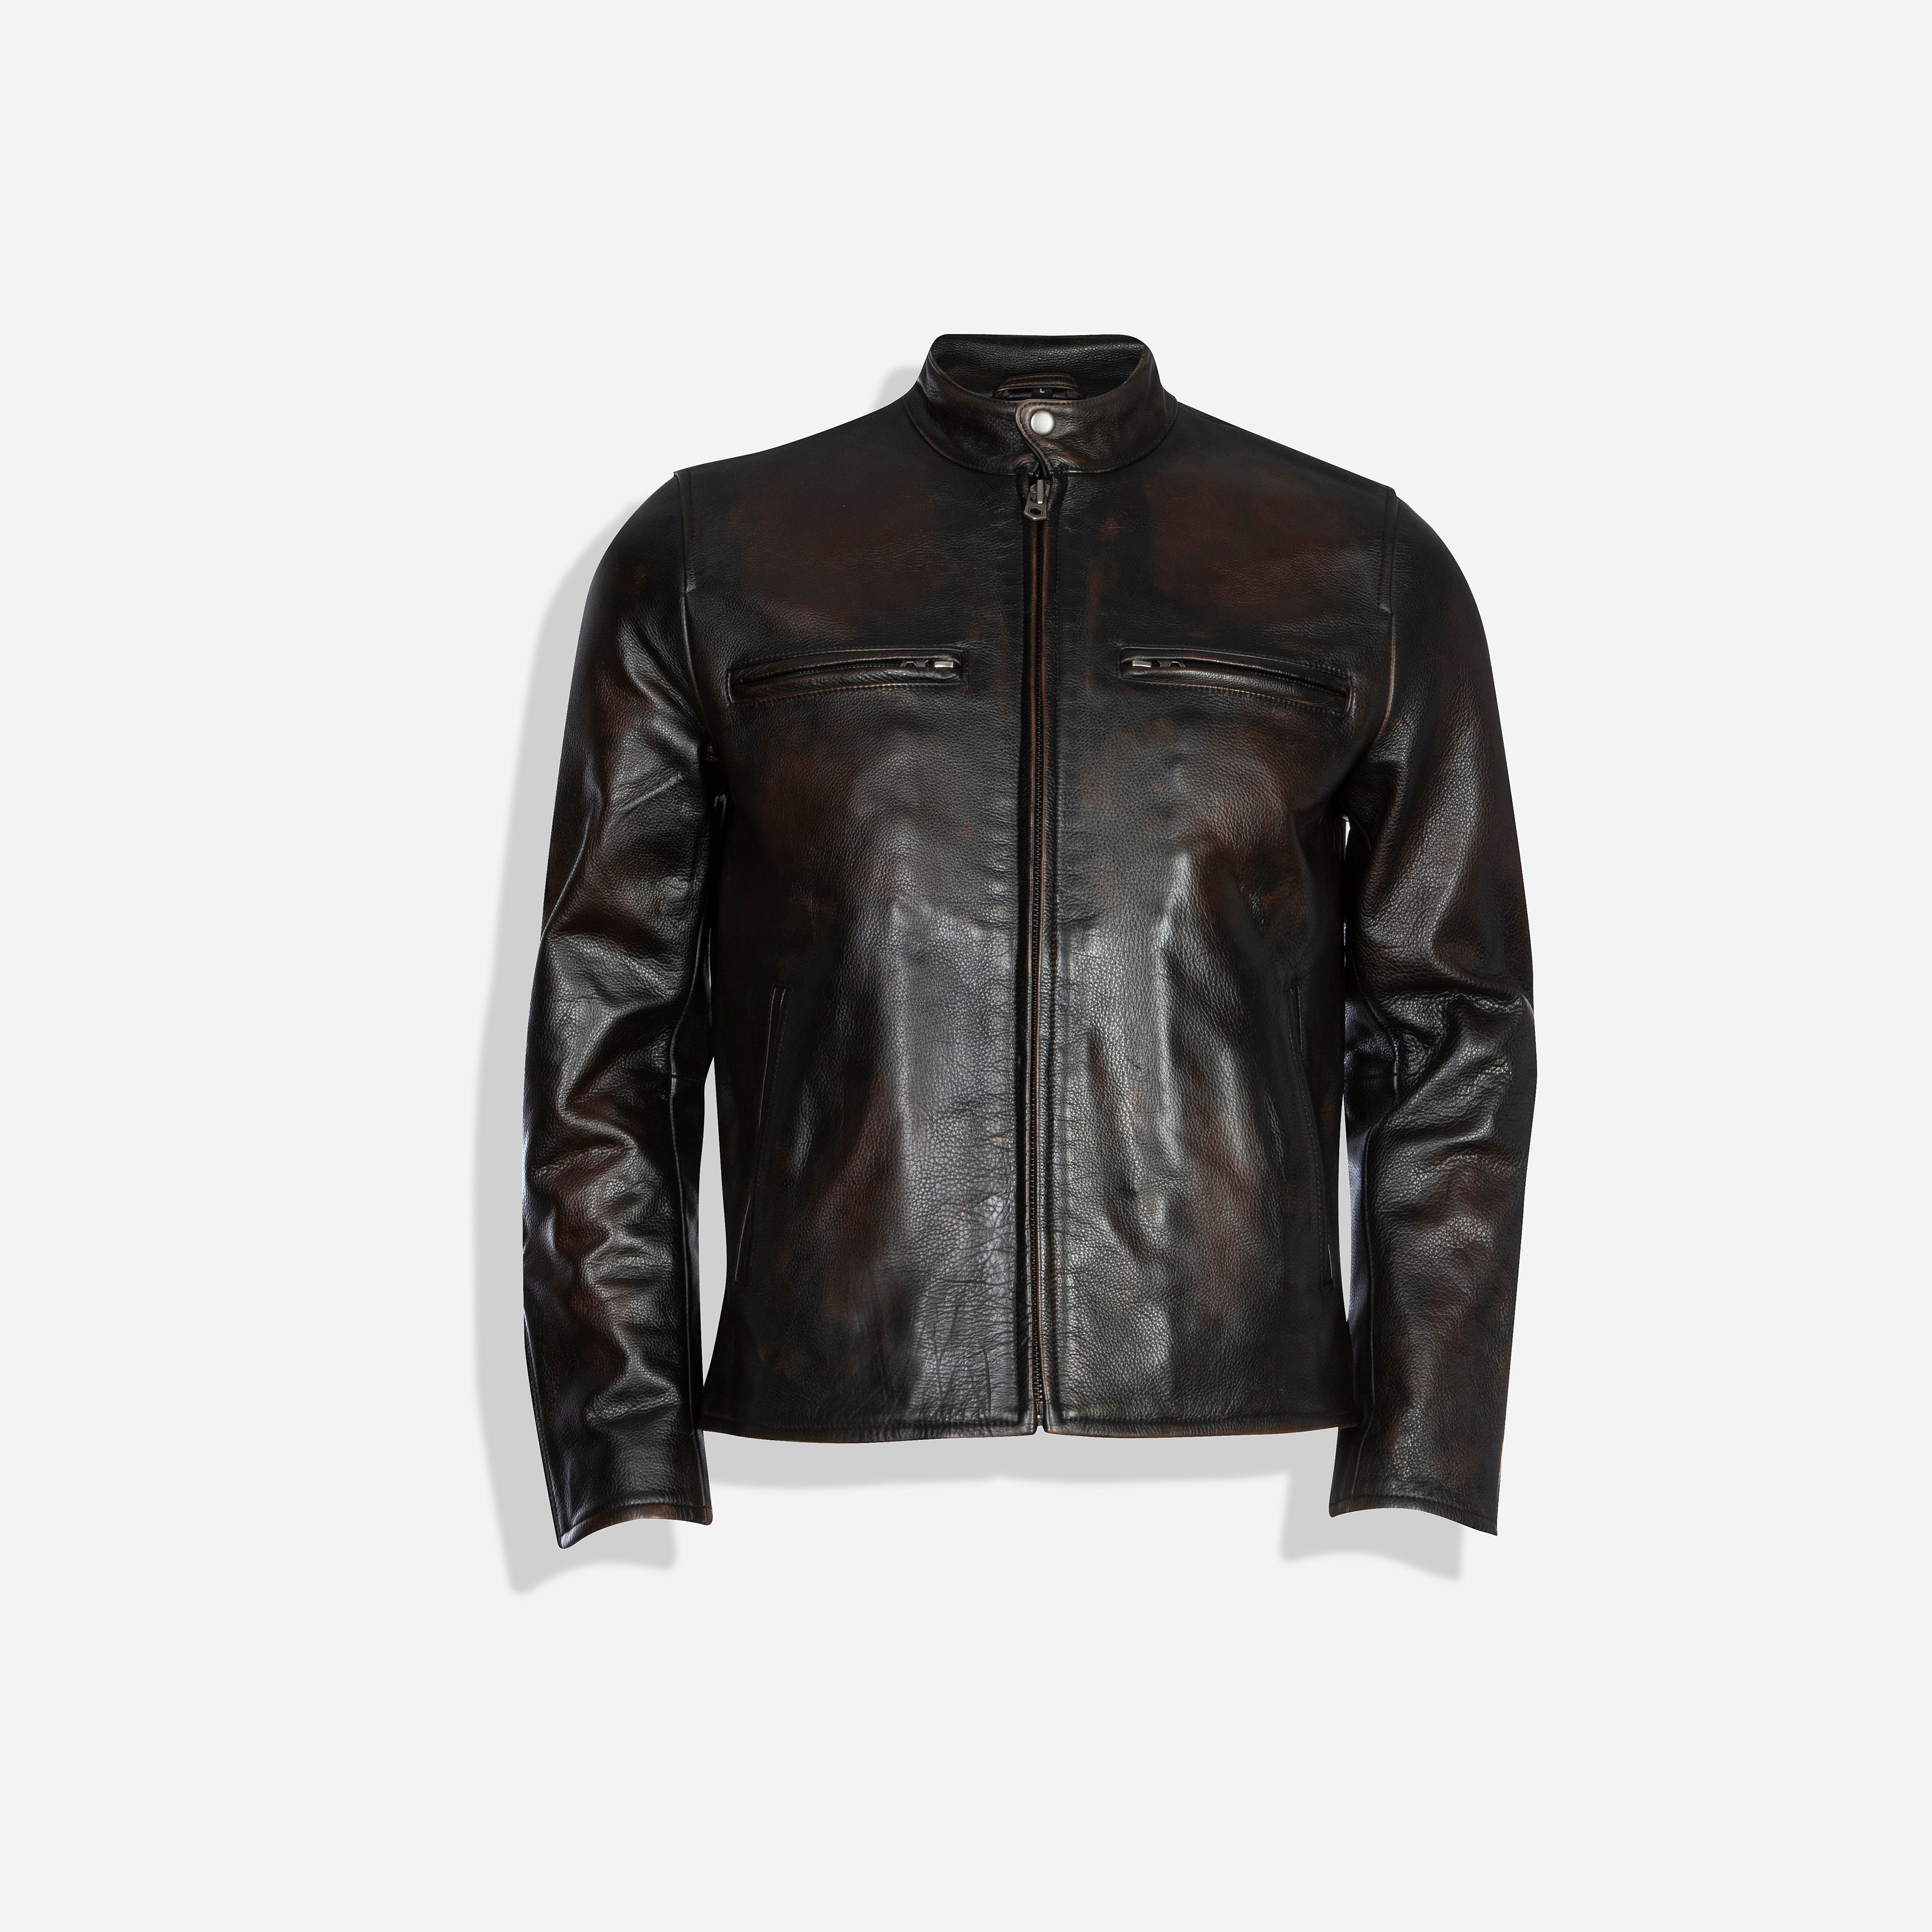 Harley Biker Jacket, Black